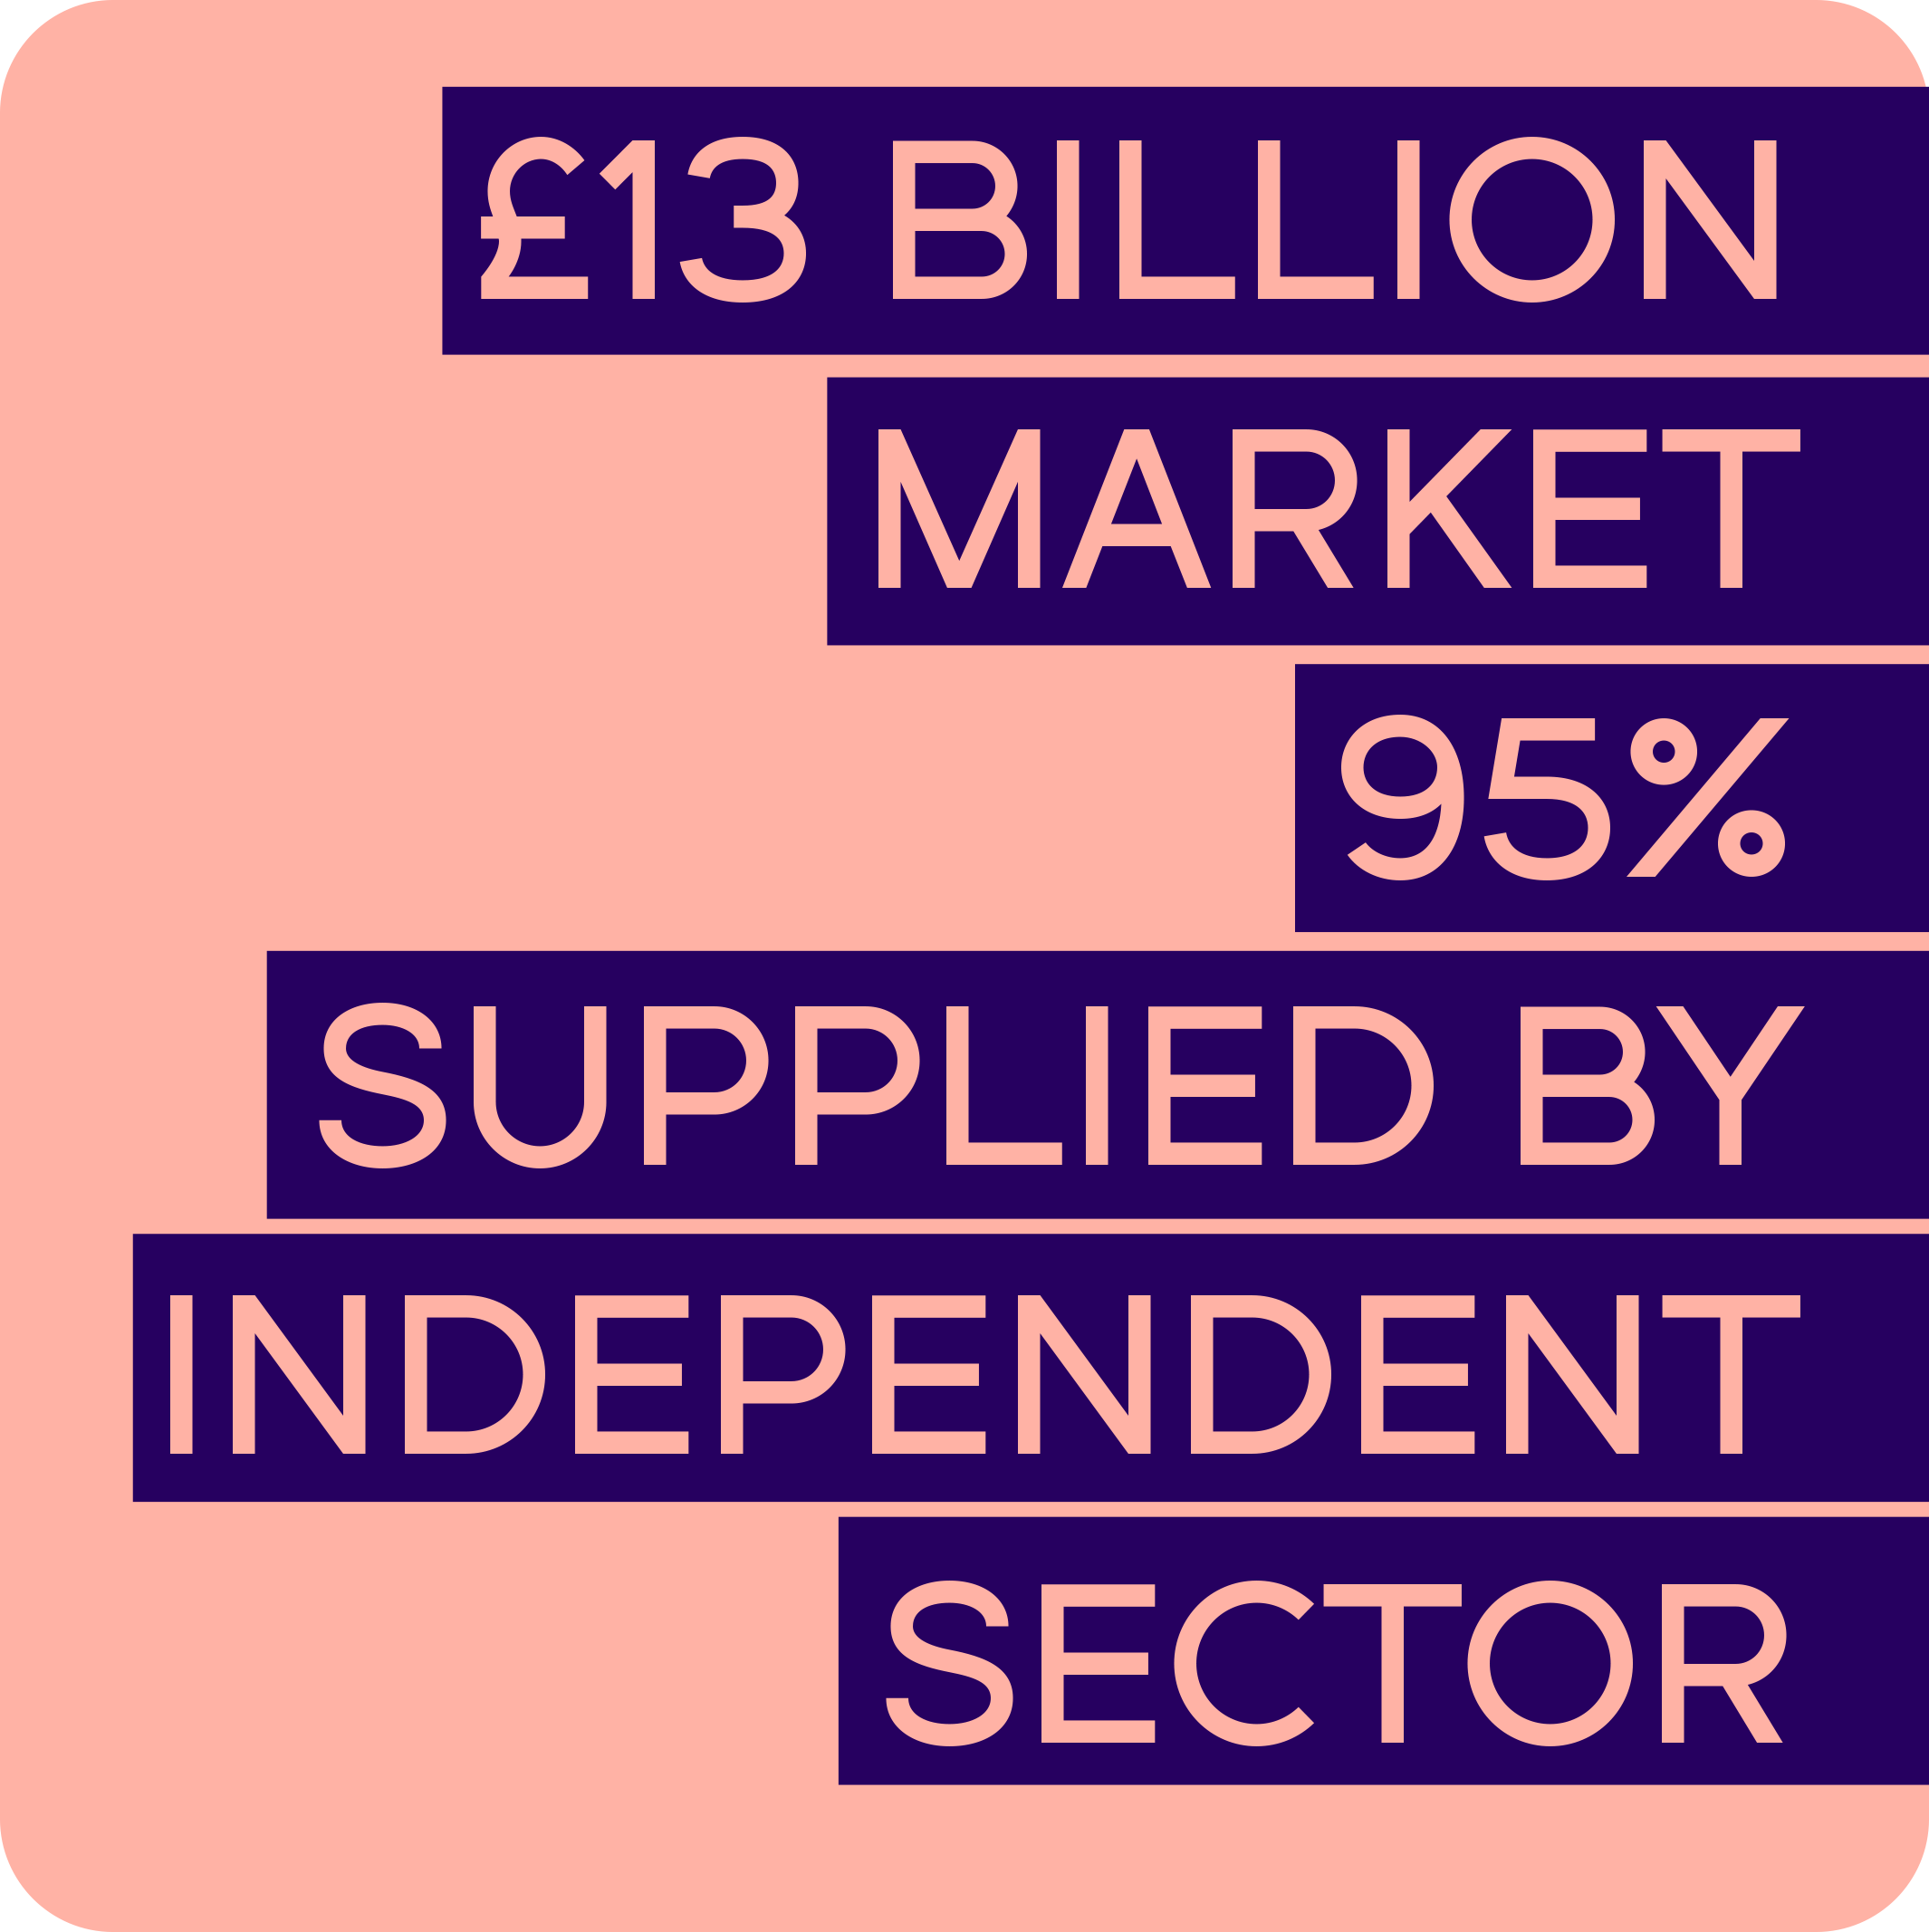 thirteen billion market, 95% supplied by independent sector